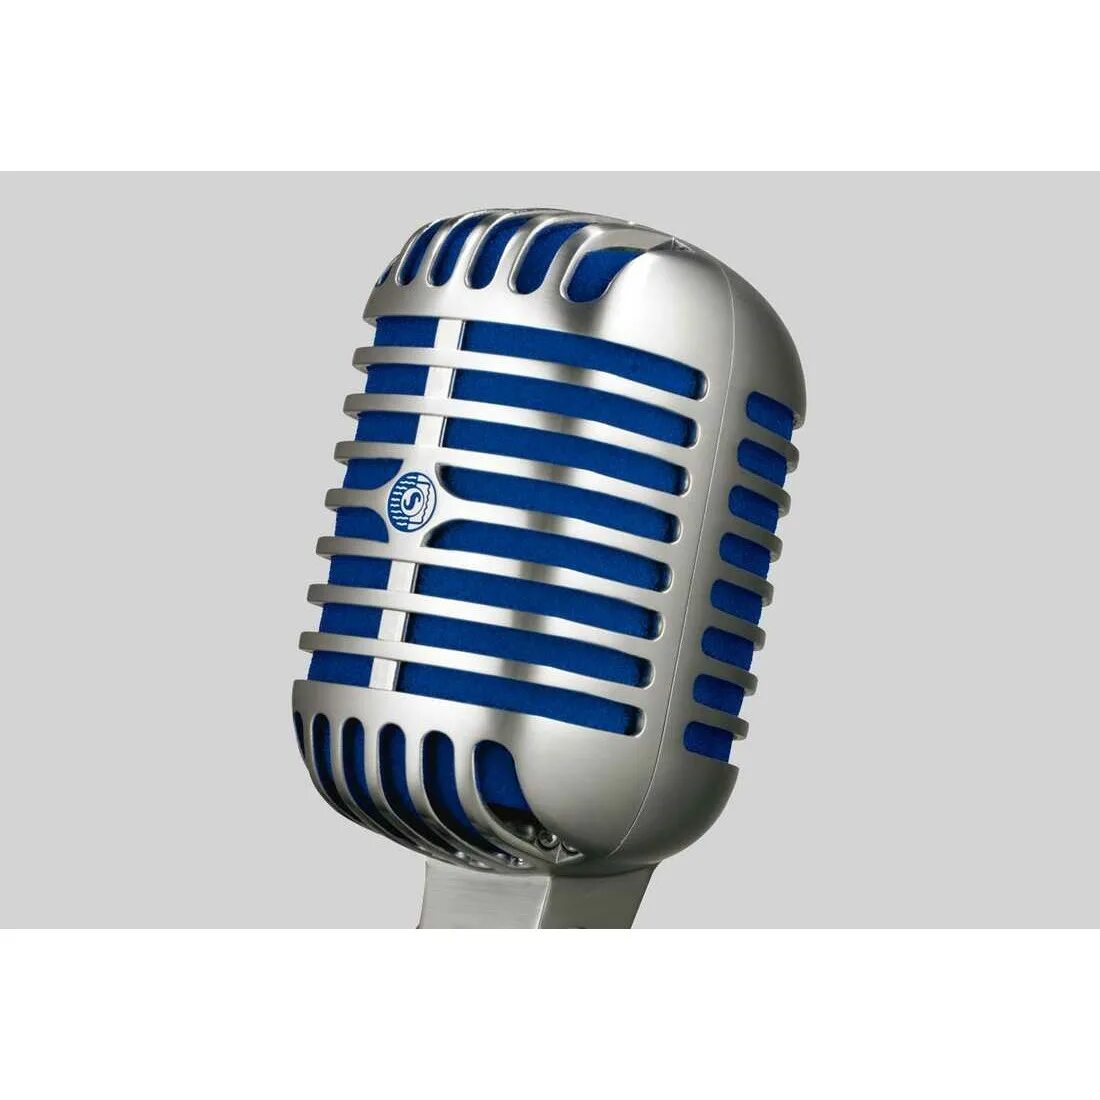 Купить отдельный микрофон. Микрофон Shure 55sh II. Shure 55sh микрофон. Shure super 55 Deluxe. Микрофон Shure 55sh SERIESII.